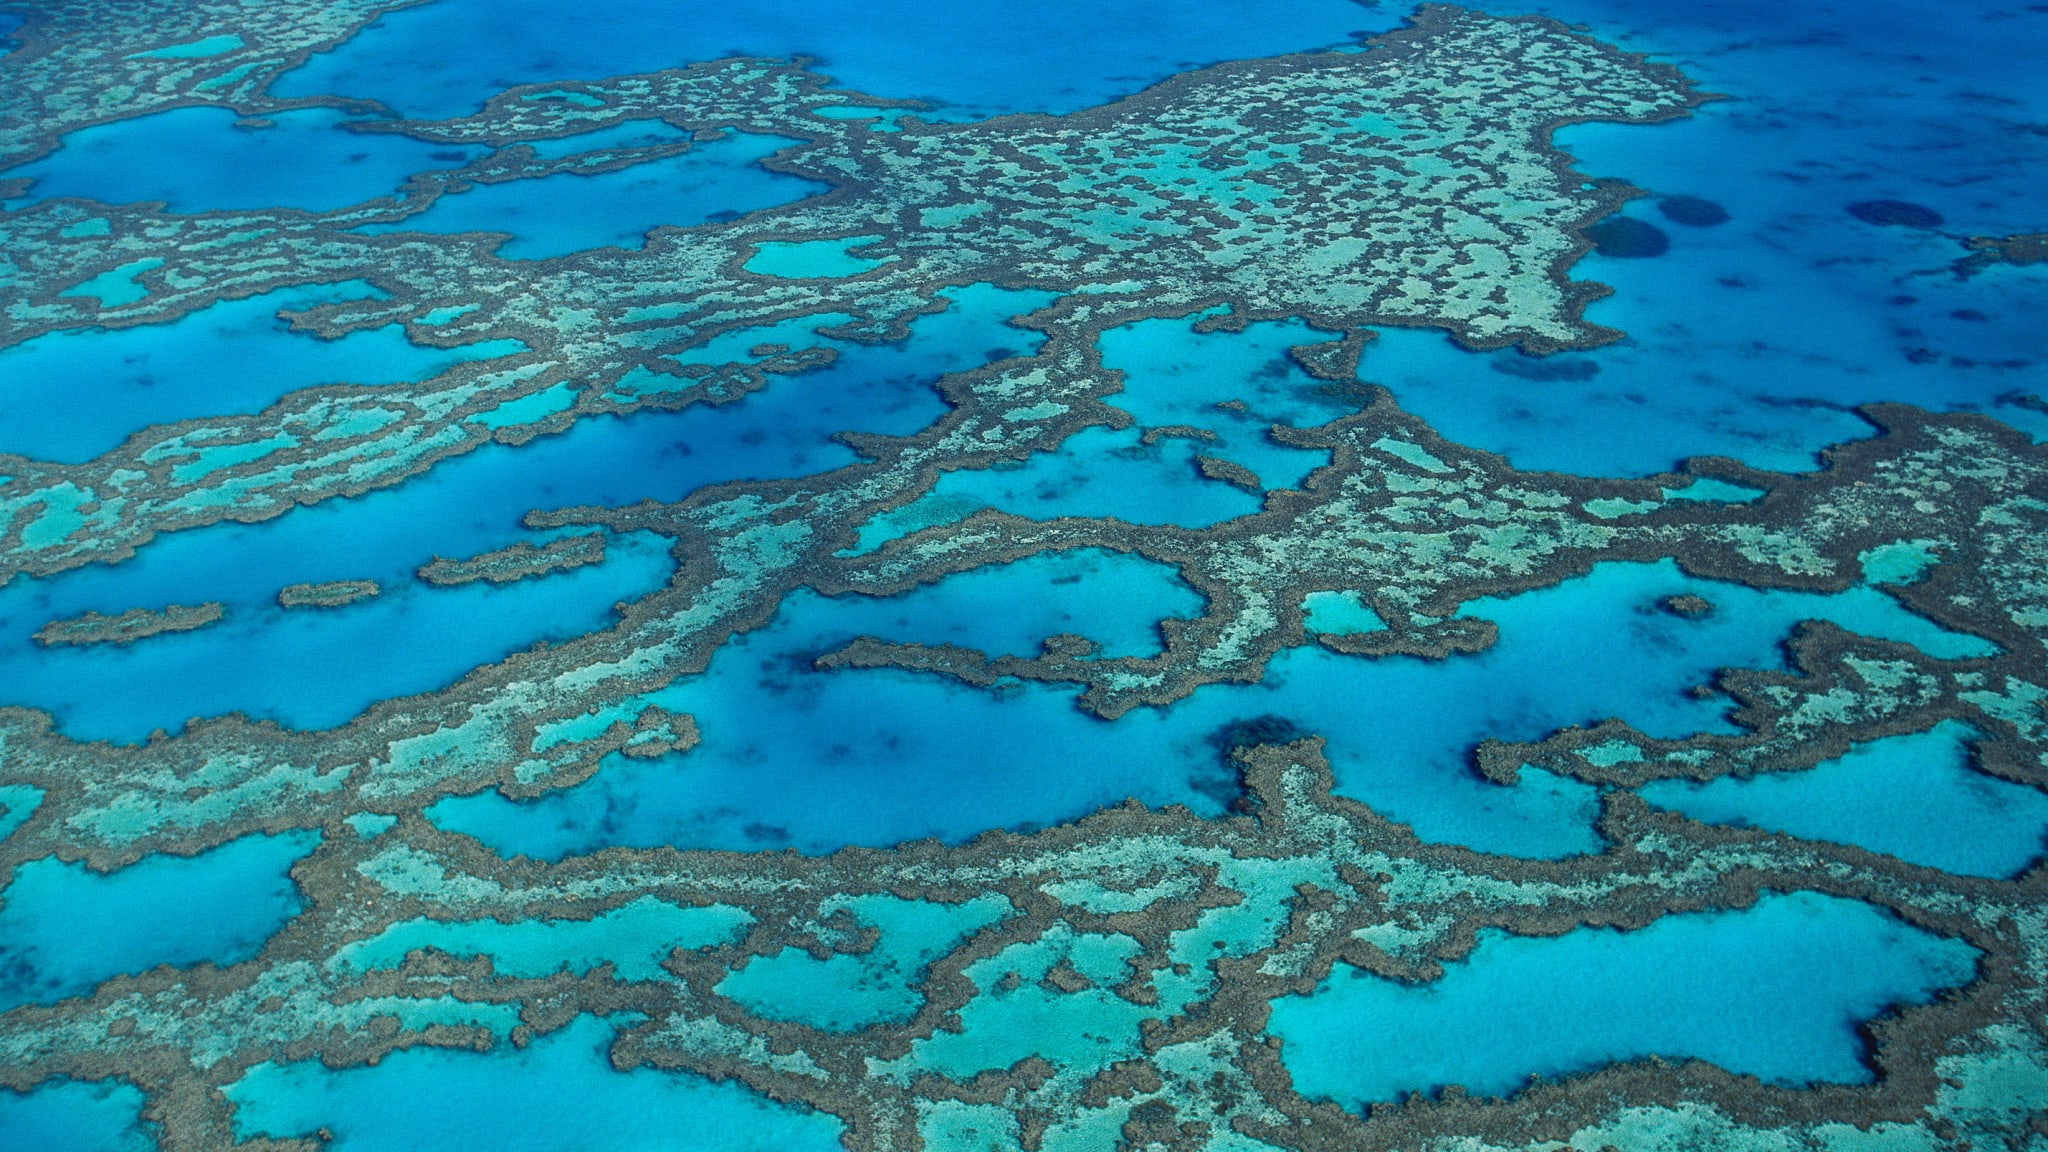 Blick von oben auf das Great Barrier Reef in Queensland, Australien © Jon Foster/HUBER IMAGES